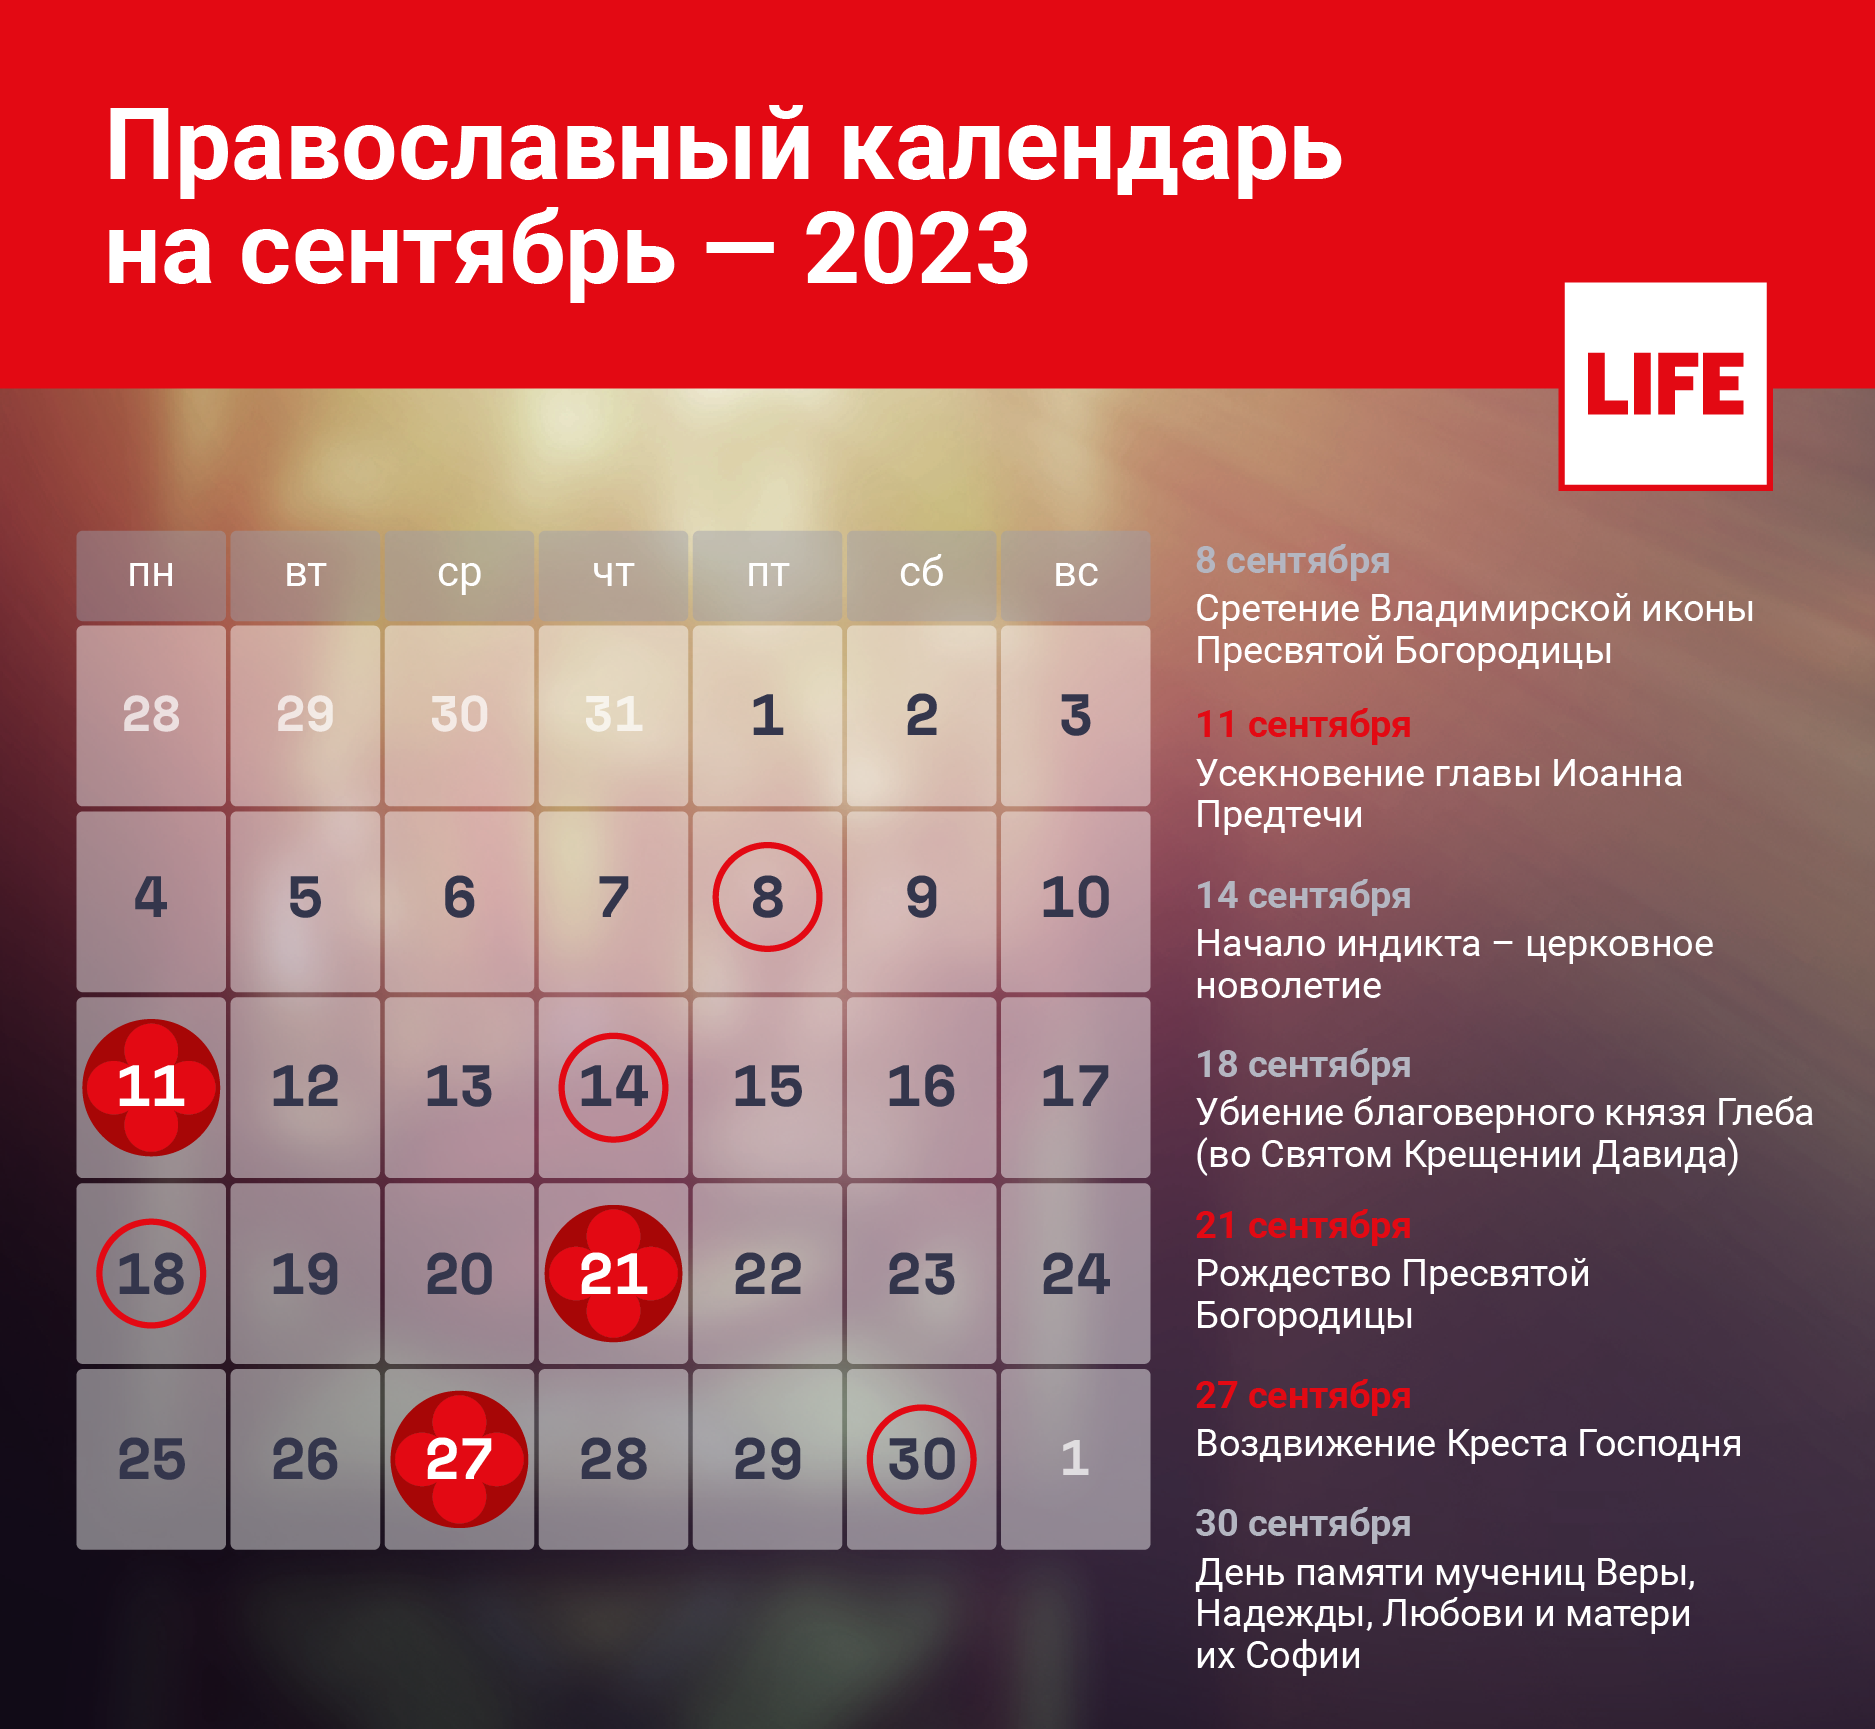 Календарь православных церковных праздников на сентябрь 2023 года. Инфографика © LIFE